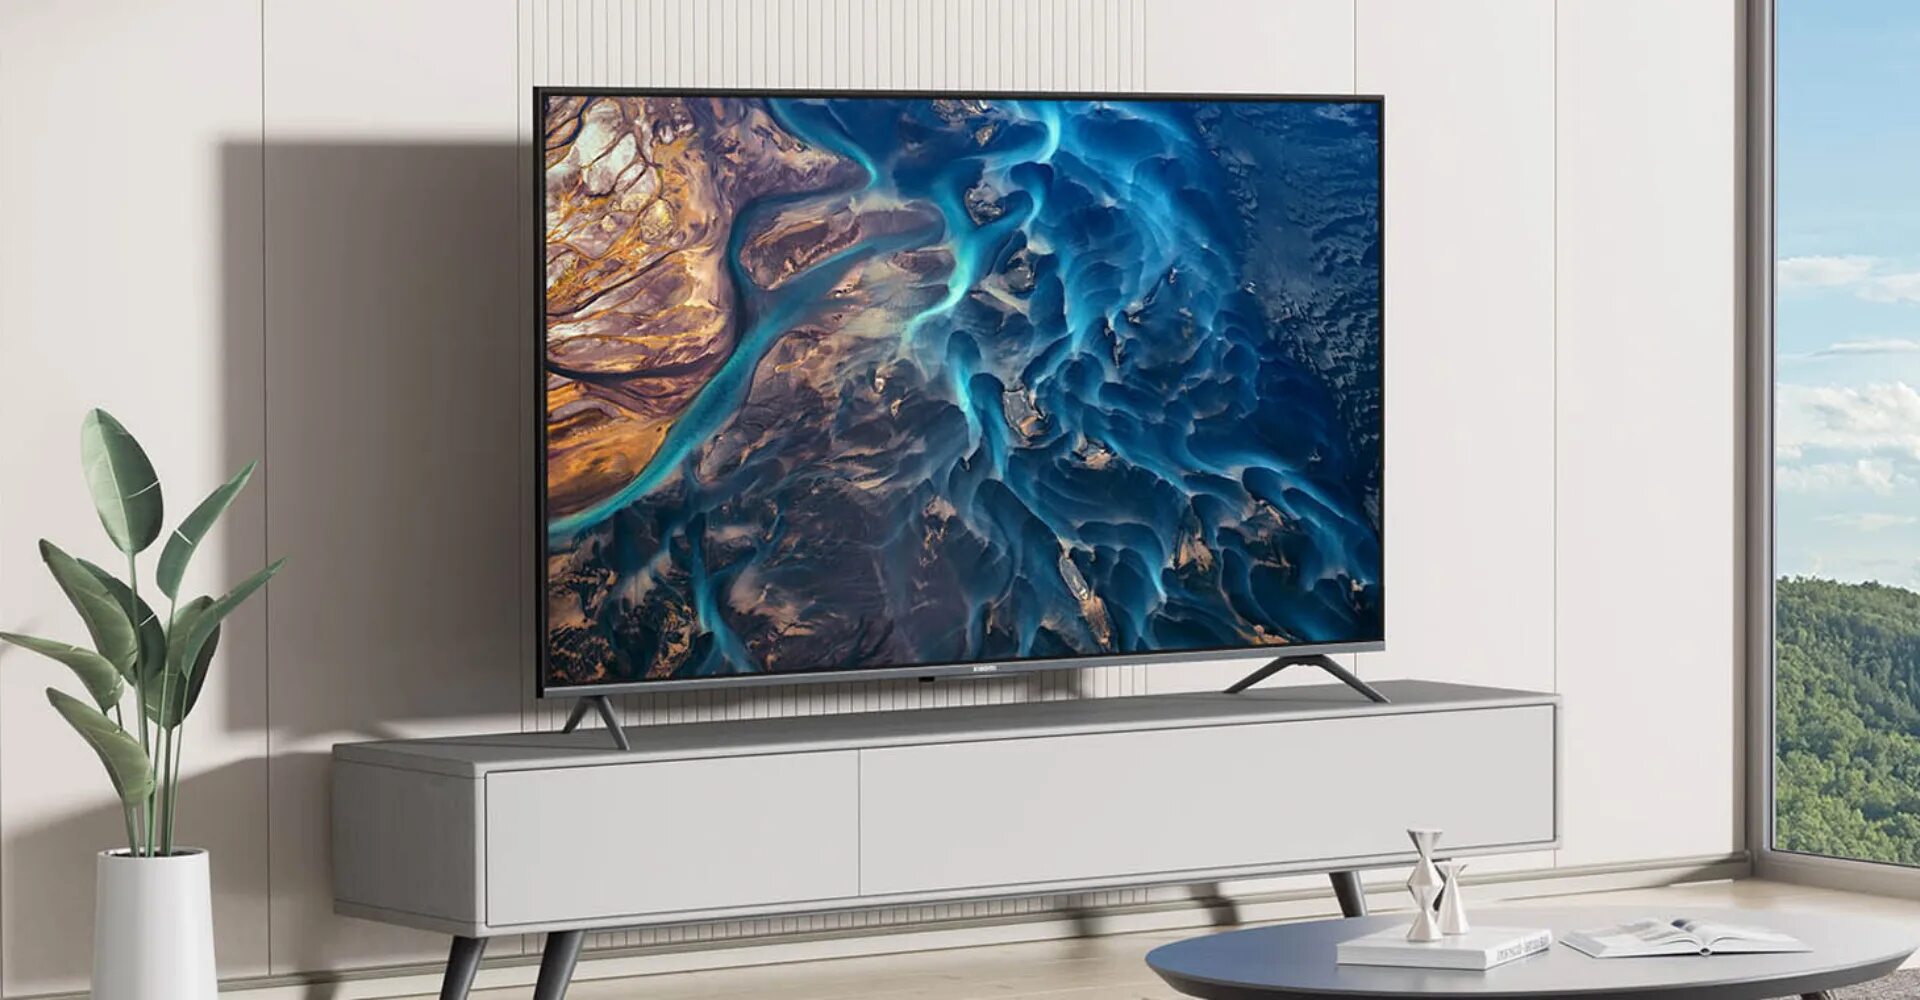 Телевизор mi tv a2. Телевизор Xiaomi es50. Xiaomi TV es 2022. Телевизор Xiaomi mi TV es 50 (2022). Новые телевизоры Xiaomi 2022.